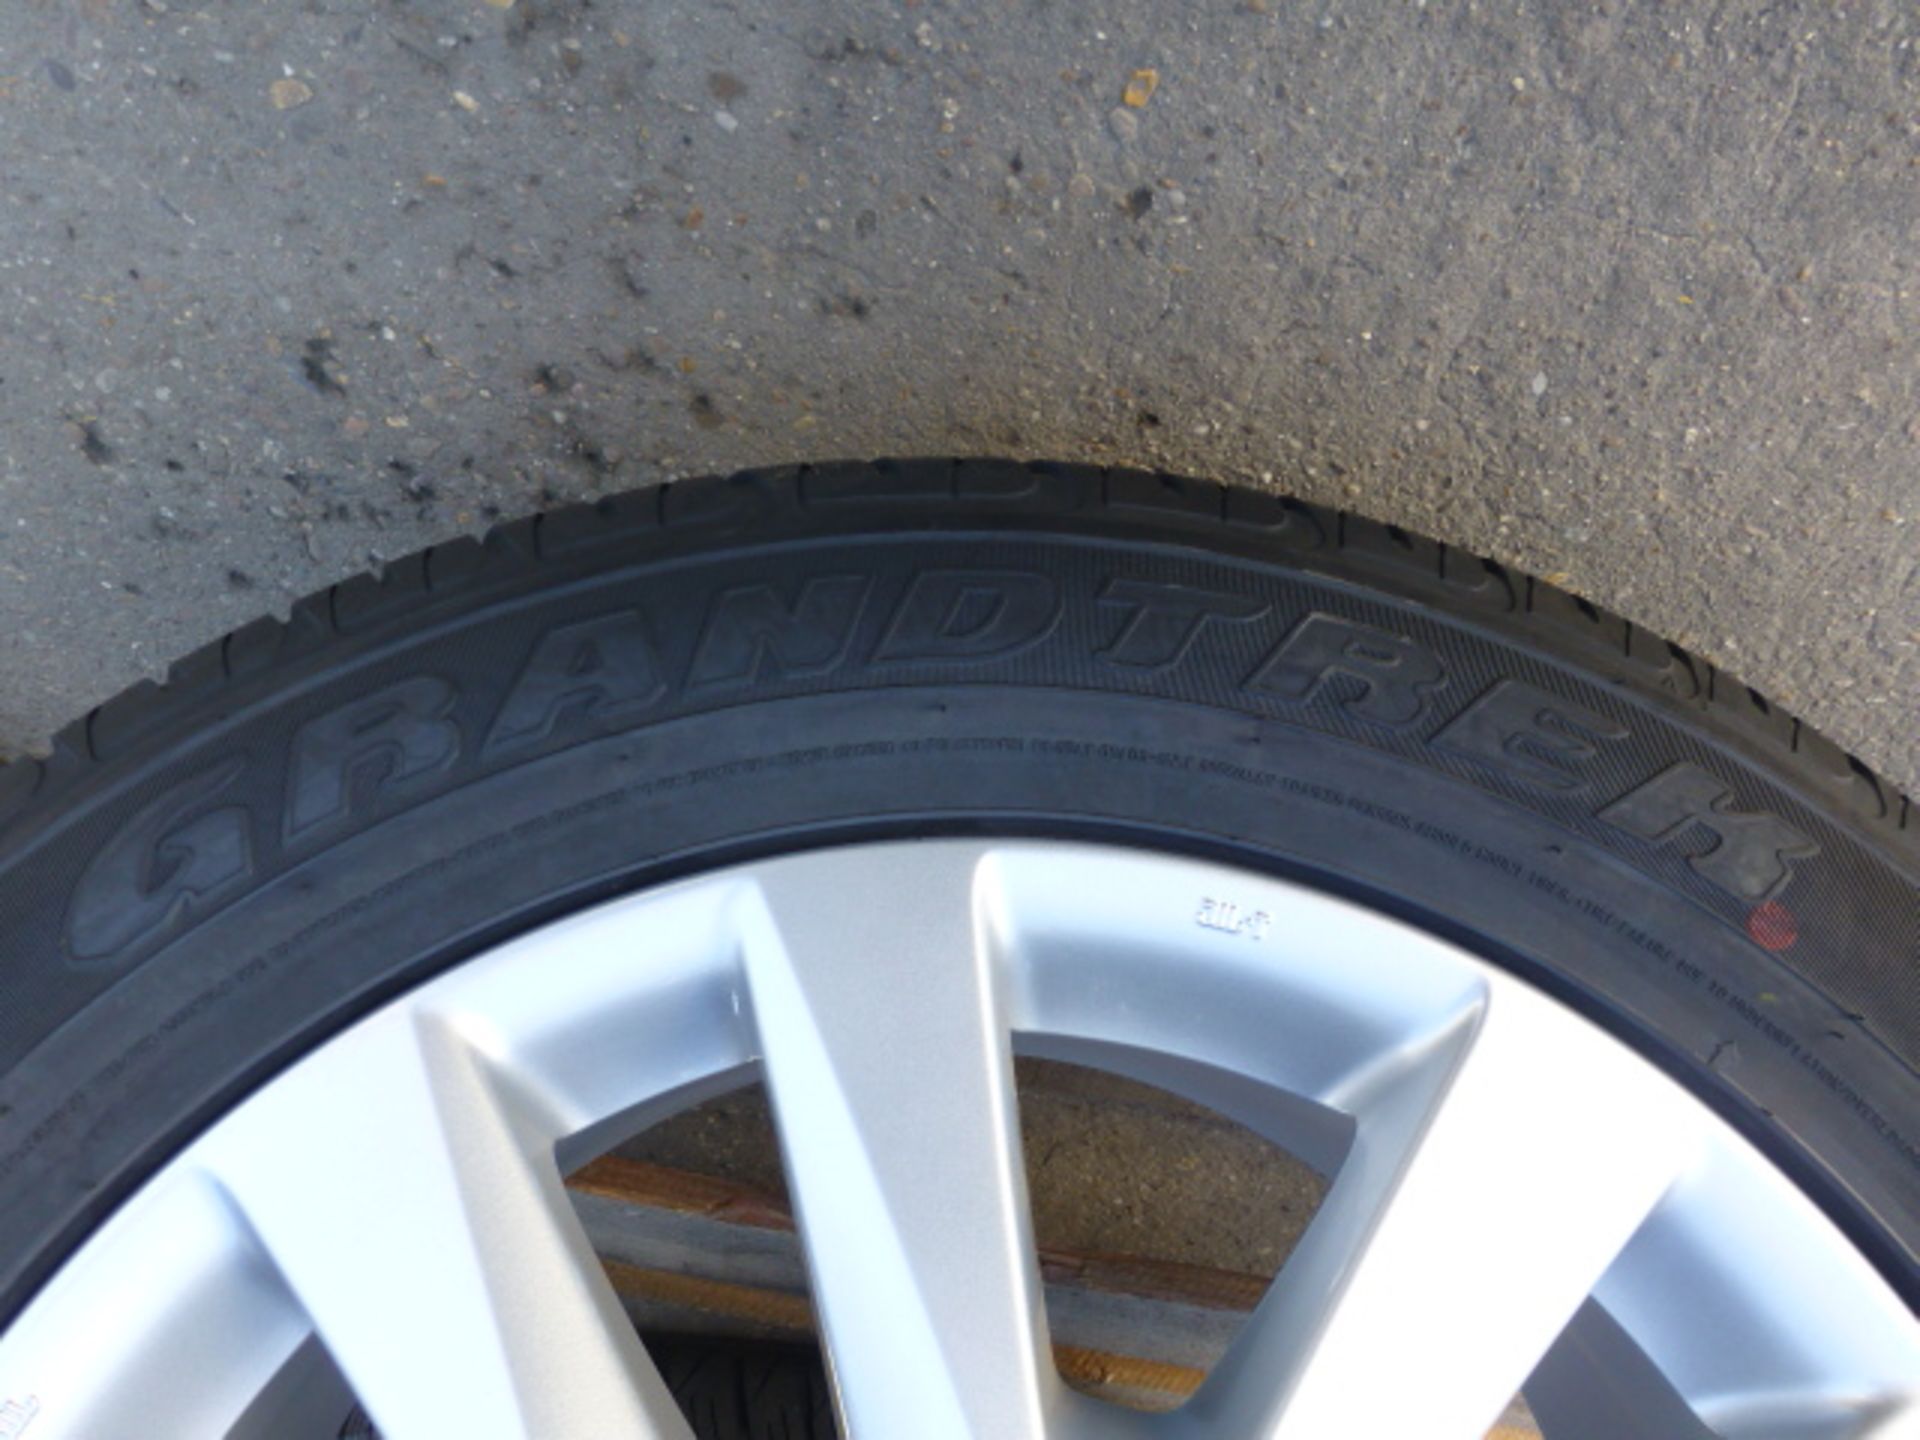 4 x Dunlop PT2A Grandtrek 285/50R20 Tyres on Land Cruiser V8 Rims - Image 6 of 6